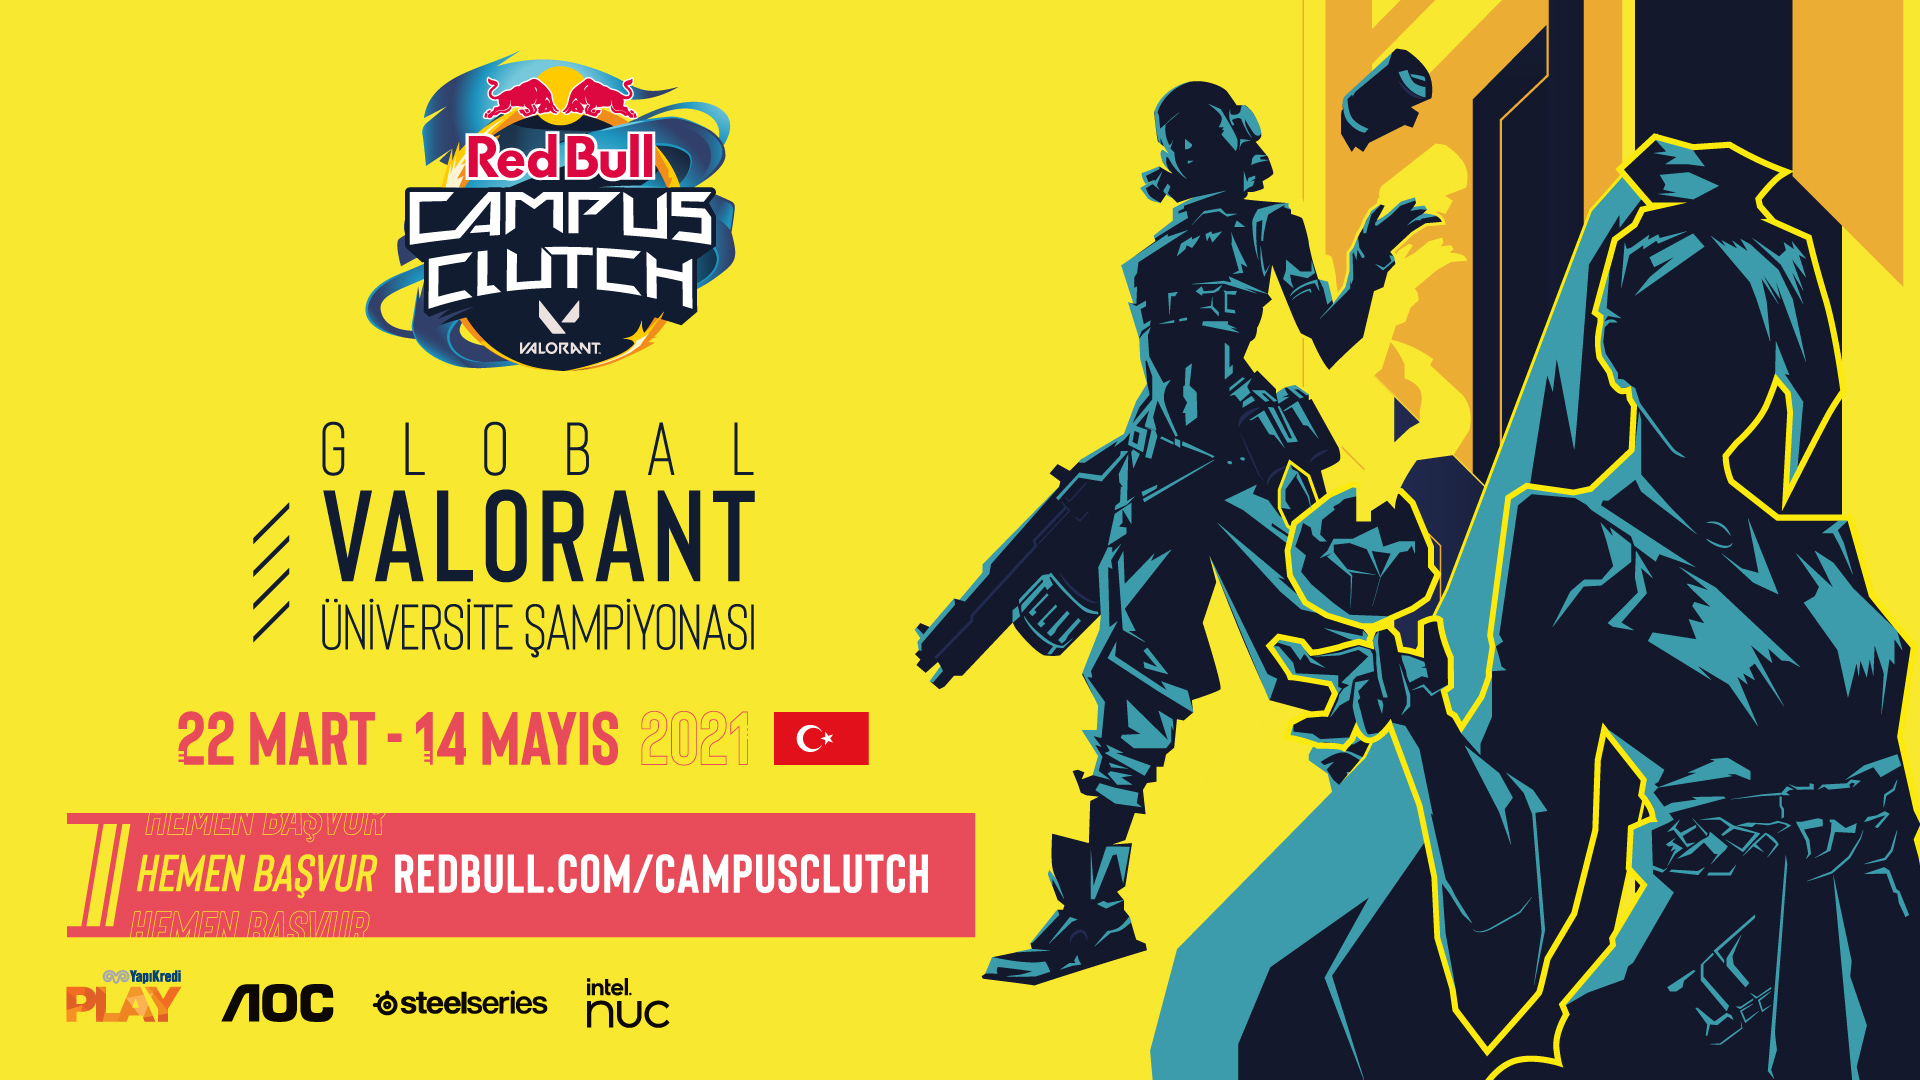 Red Bull Campus Clutch üniversite öğrencilerini dünya sahnesine taşıyacak esportimes